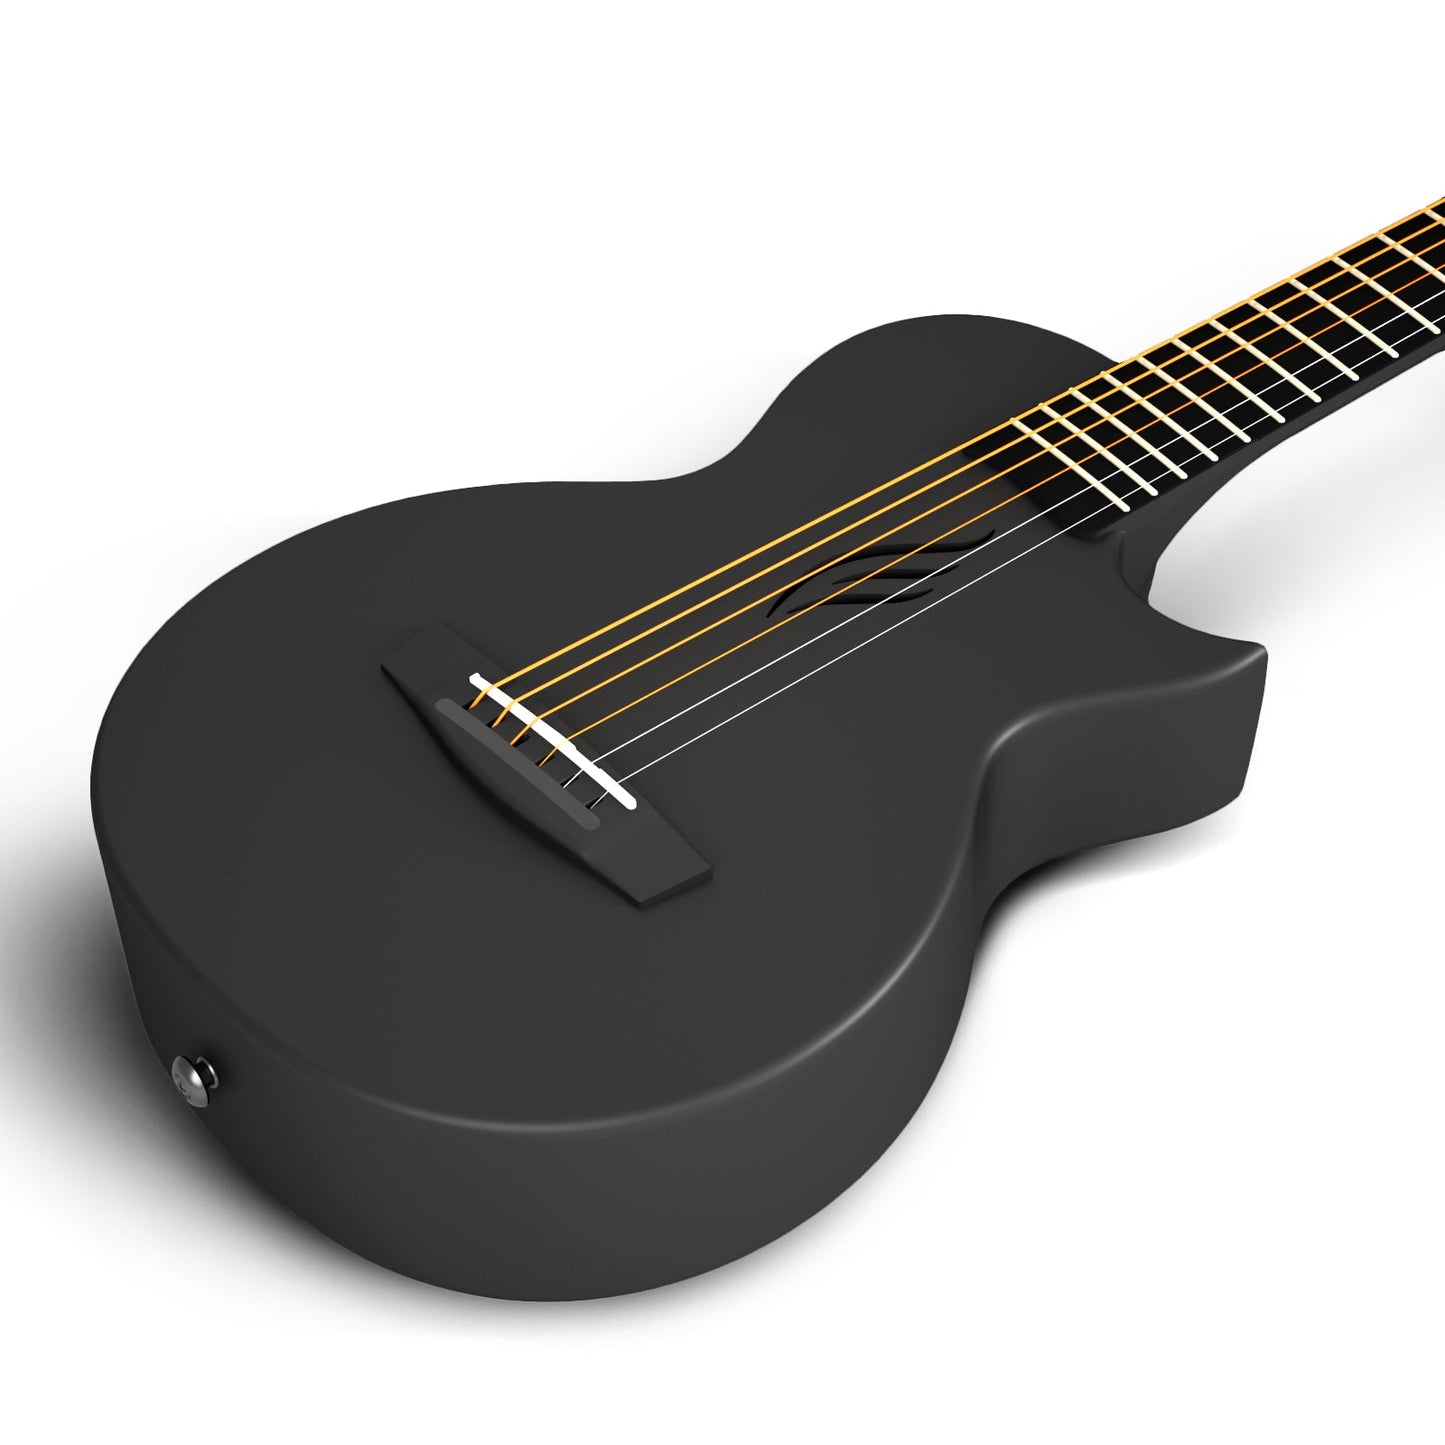 ENYA NOVA GO MINI Carbon Guitar Black